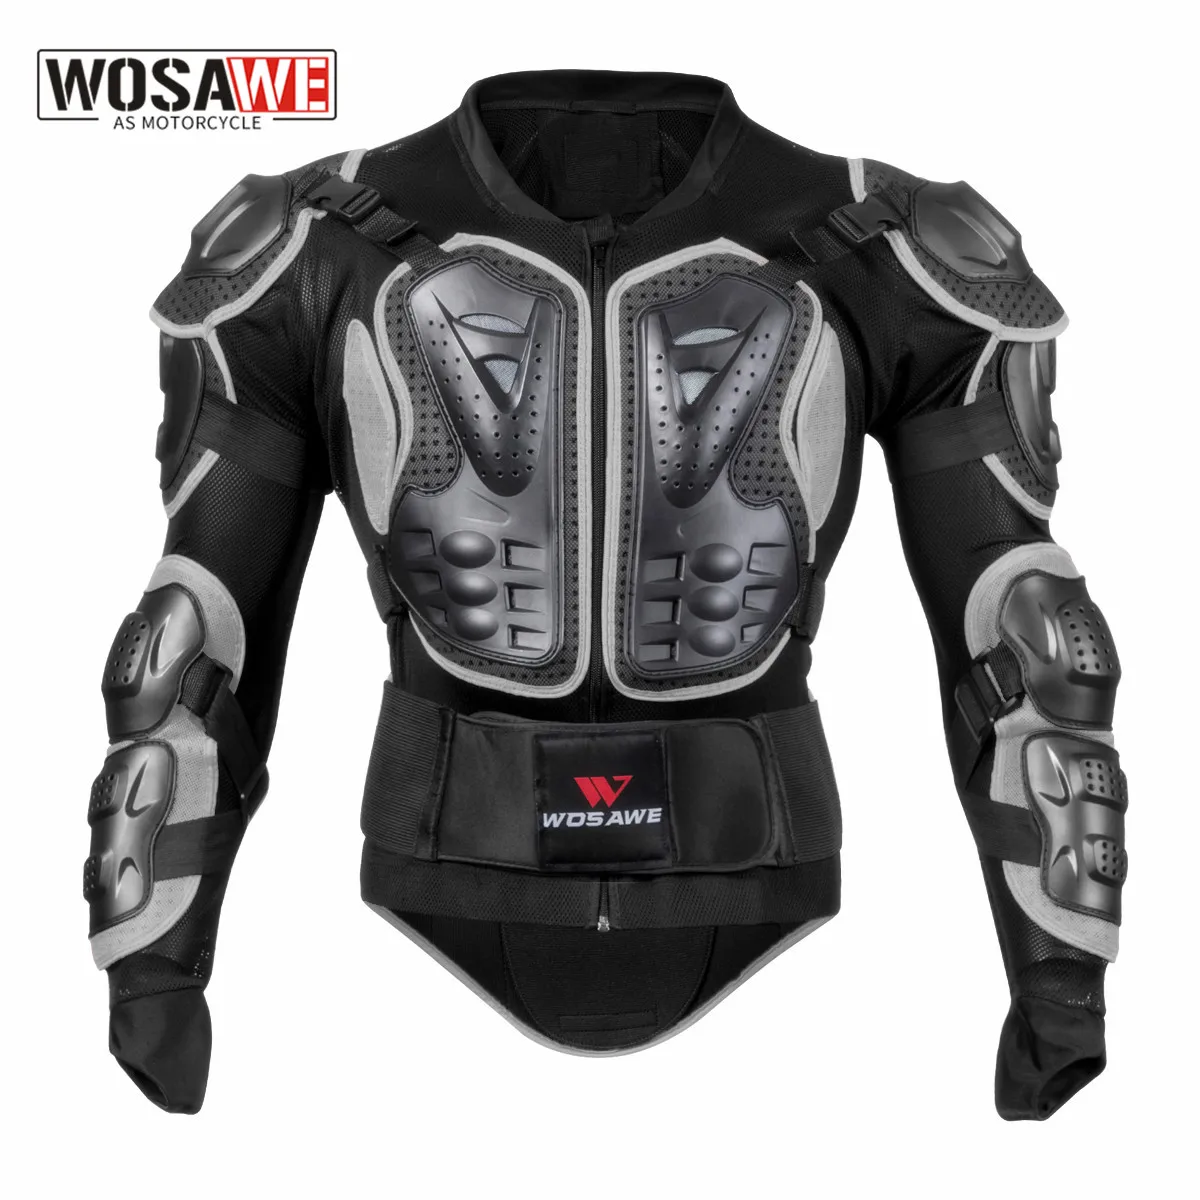 wosawe-motocross-moto-armor-motos-motocicleta-body-armor-shirt-jacket-pvc-eva-back-shoulder-protector-gear-size-m-3xl